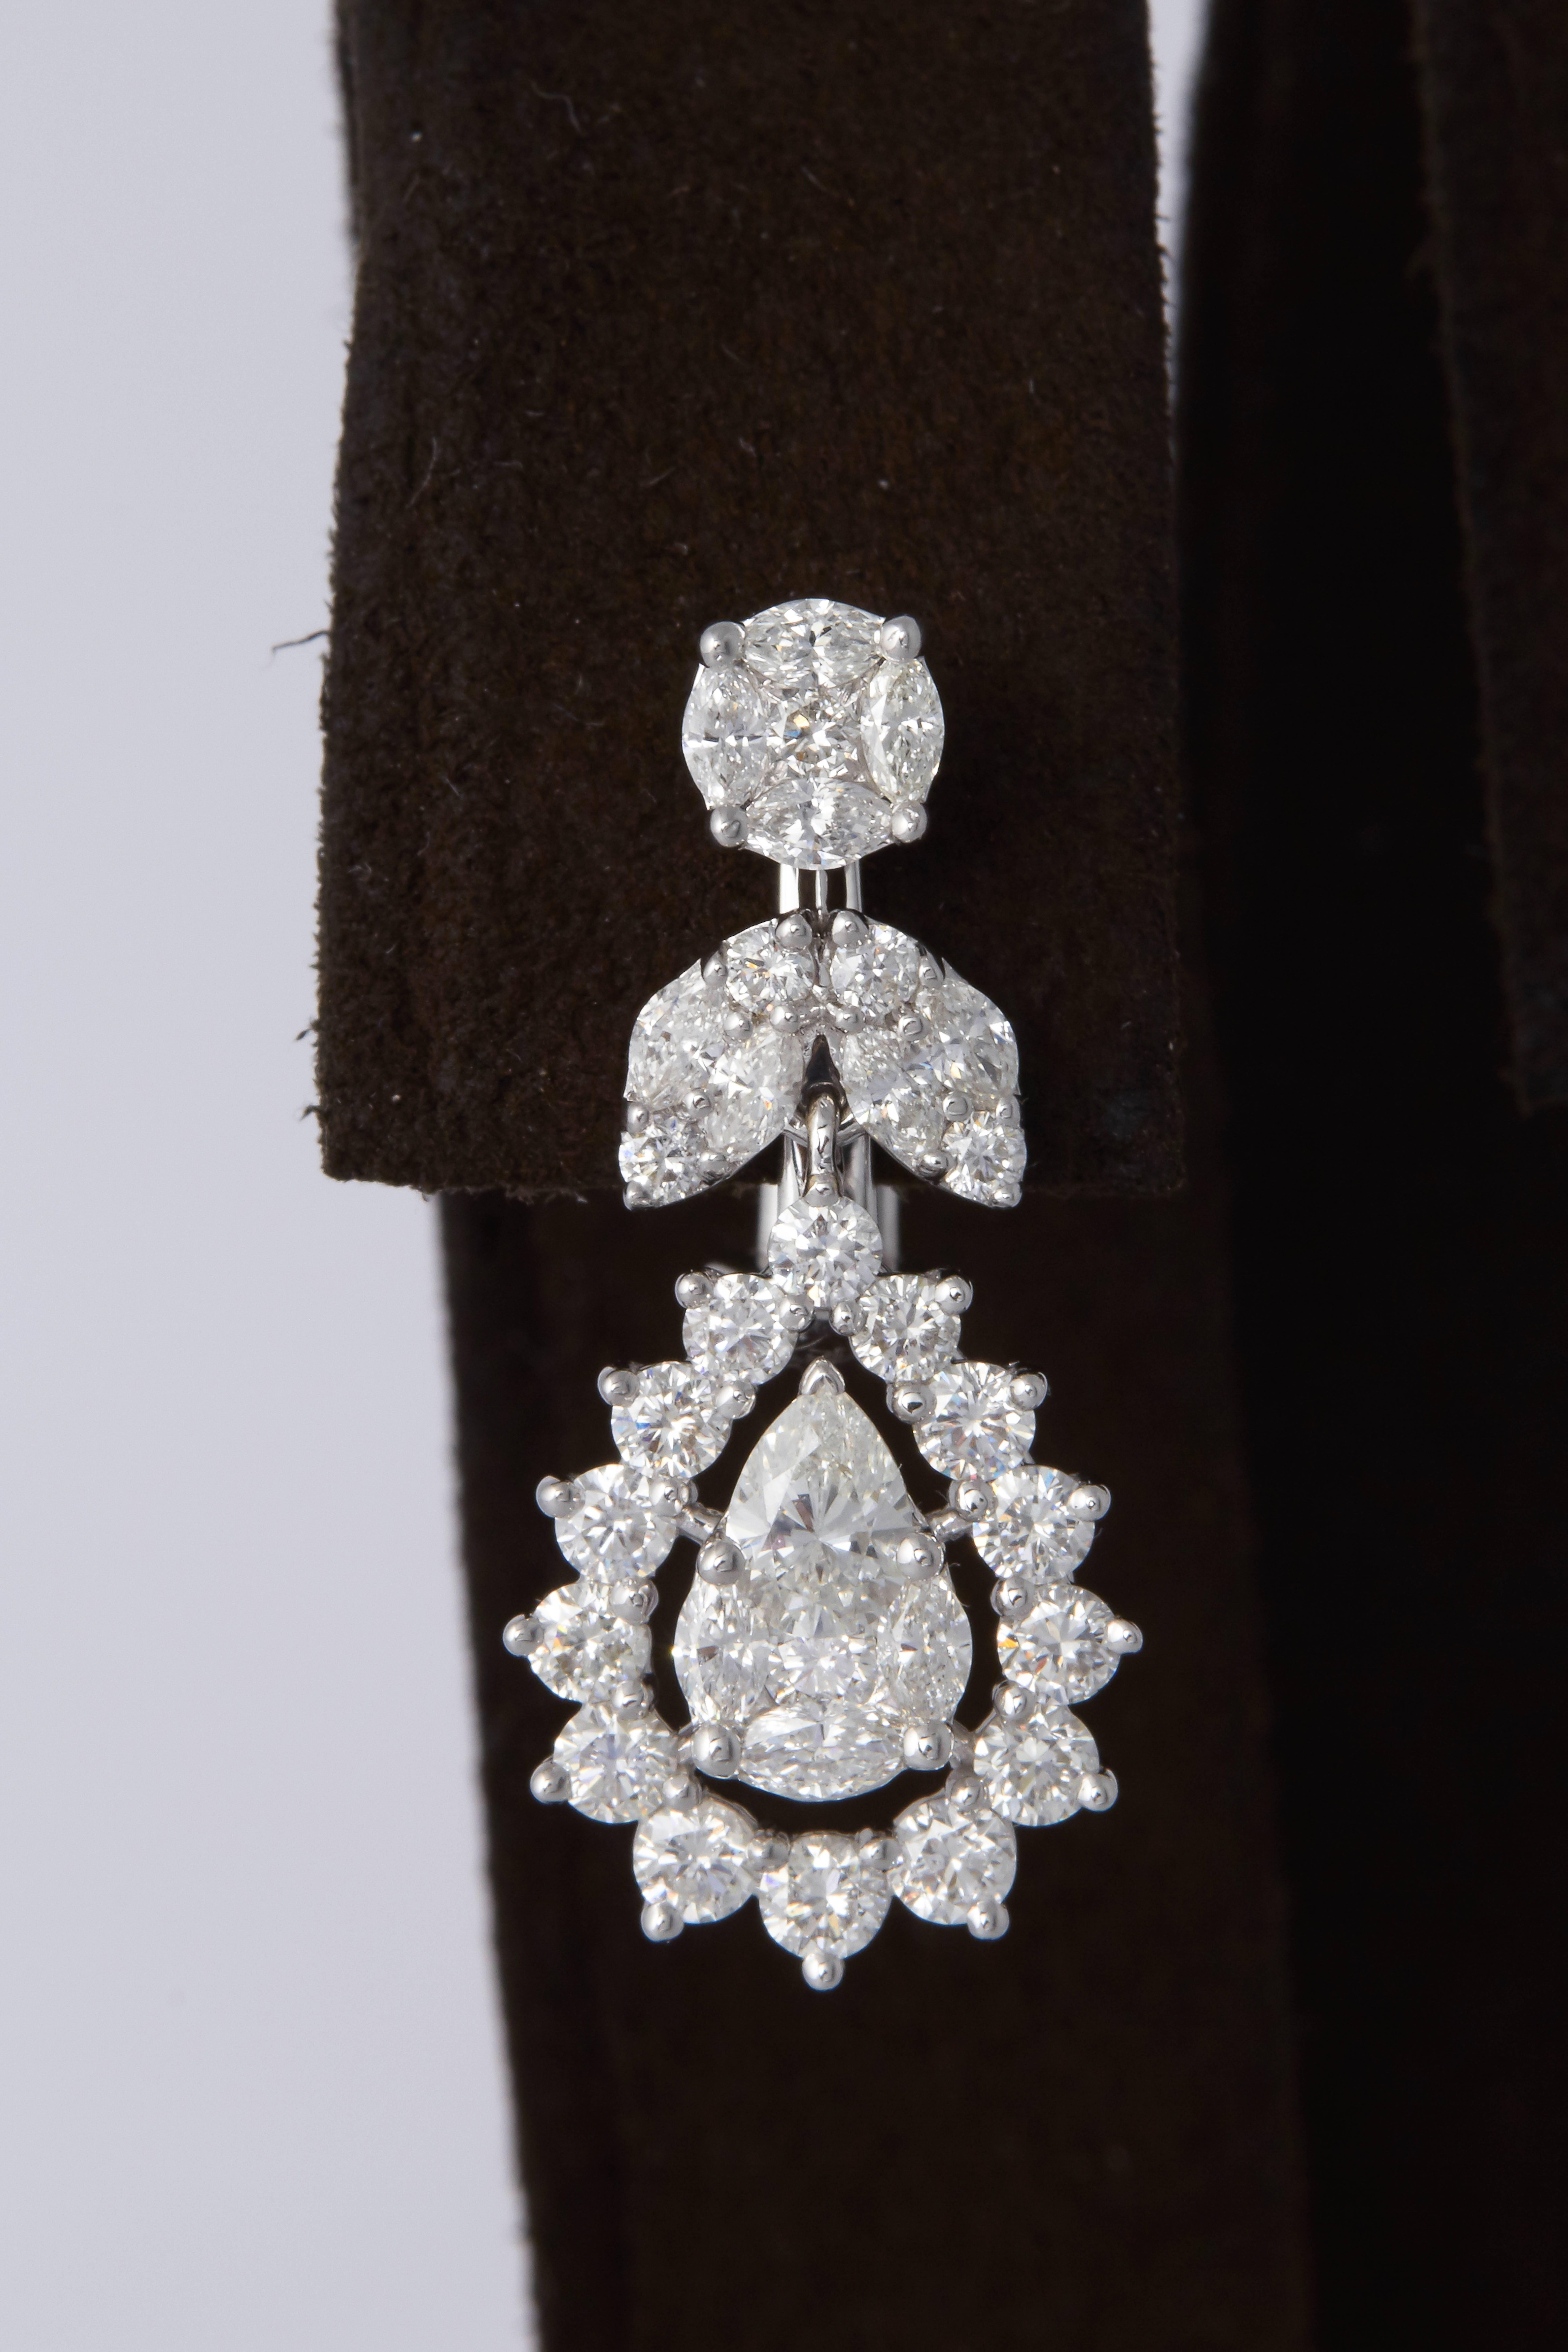 

Une boucle d'oreille élégante qui brille seule ou qui complètera d'autres bijoux de votre propre collection.

2.84 carats de diamants de couleur F-G et de pureté VS, sertis en or blanc 18 carats. 

La boucle d'oreille est composée de diamants de